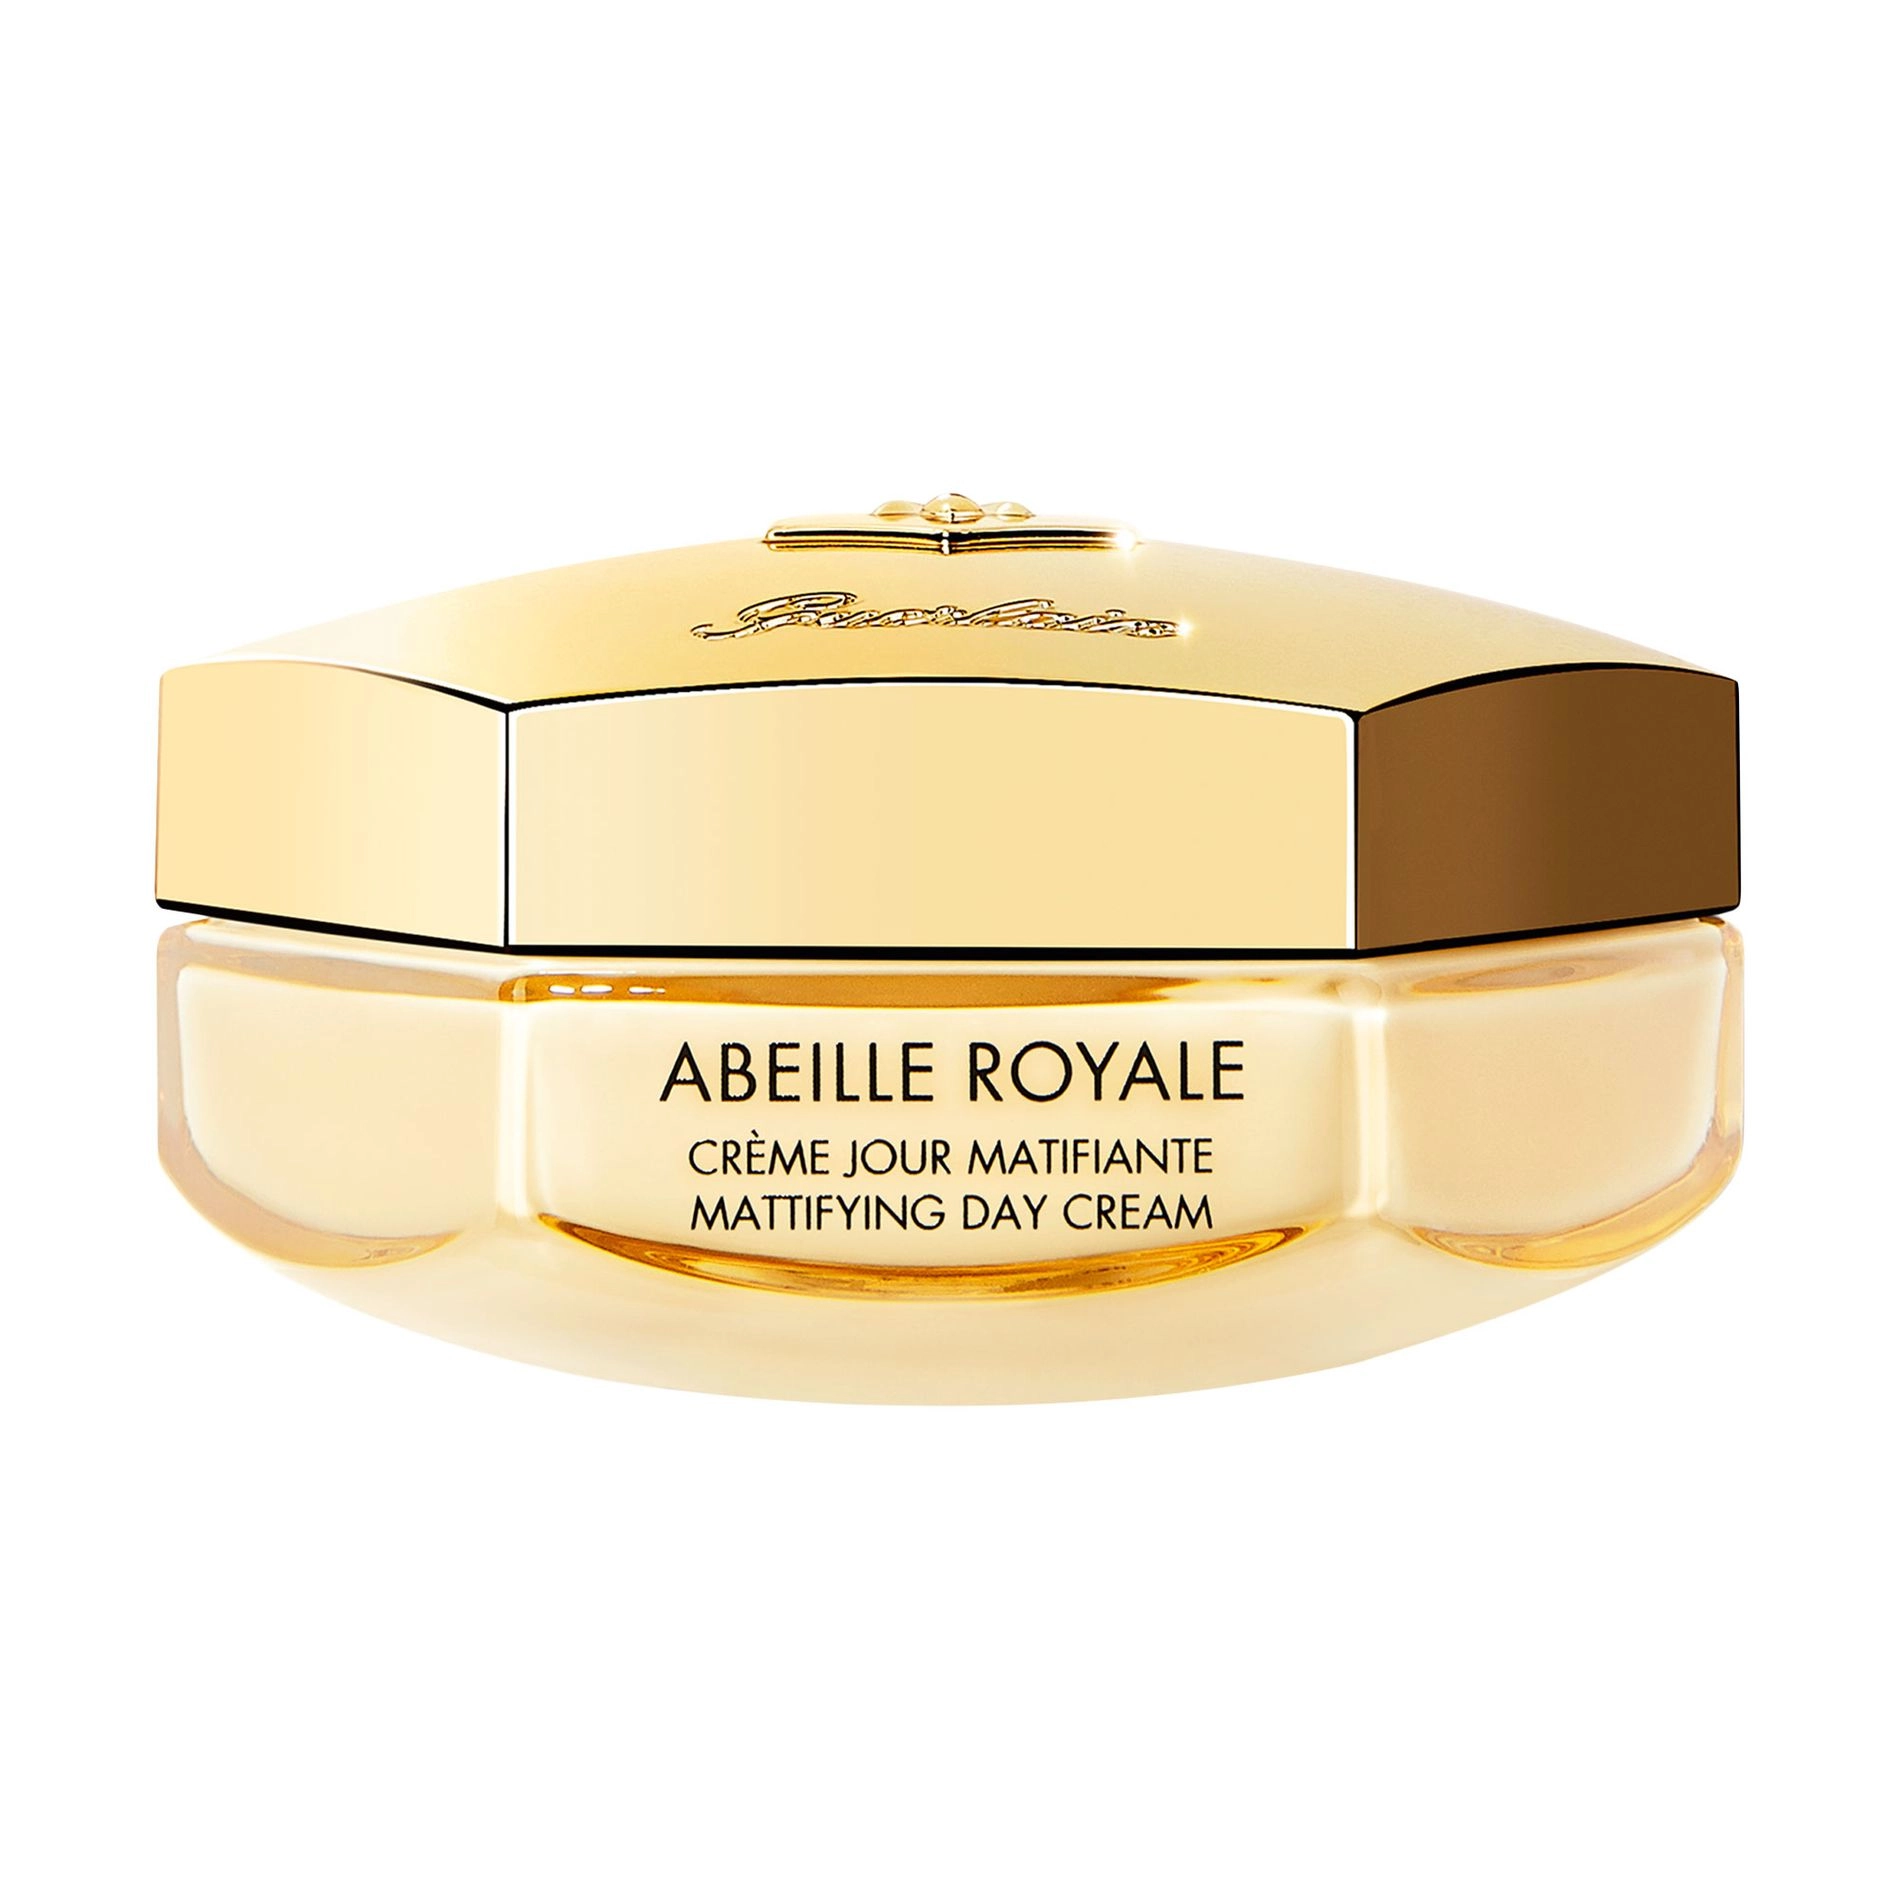 Guerlain Дневной матирующий крем для лица Abeille Royale Mattifying Day Cream, 50 мл - фото N1